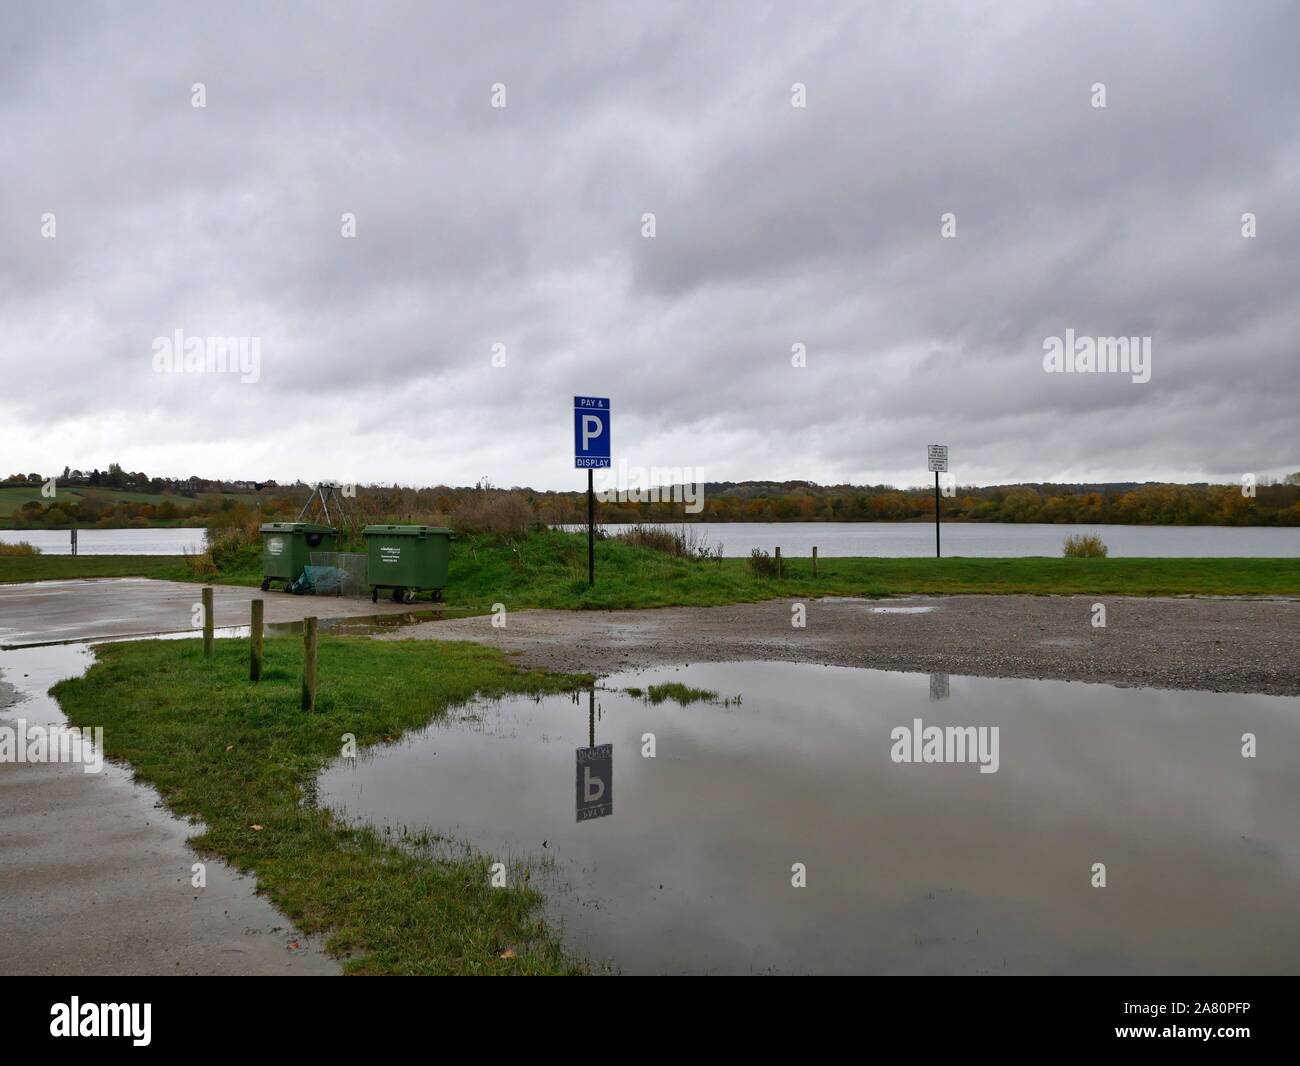 Réflexion d'un parking sign dans une flaque d'eau par le lac à Pugneys Country Park, à Wakefield Yorkshire Angleterre Banque D'Images